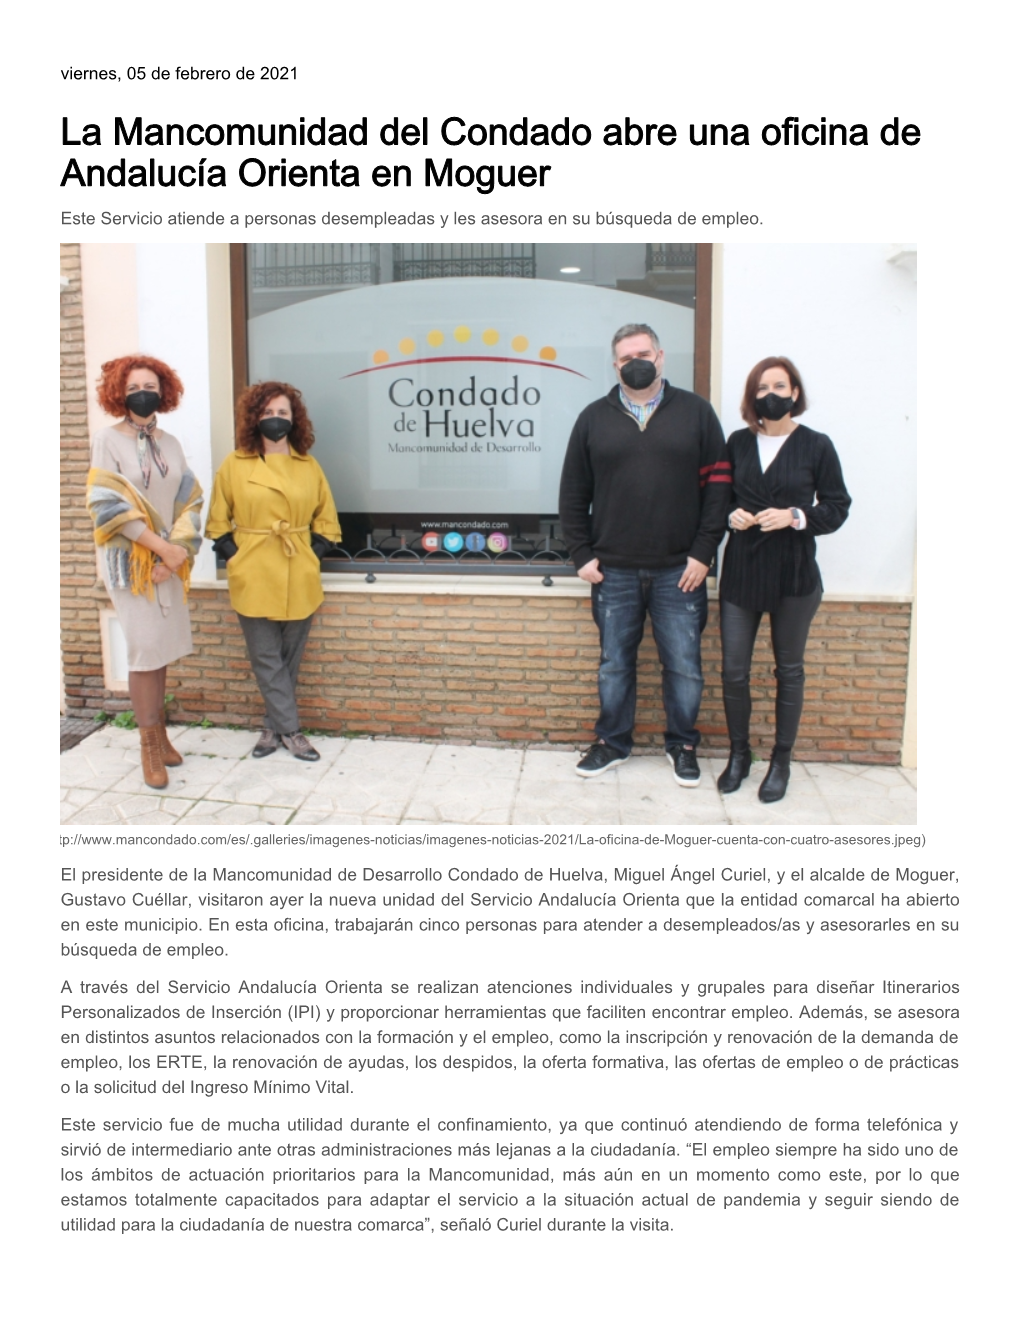 La Mancomunidad Del Condado Abre Una Oficina De Andalucía Orienta En Moguer Este Servicio Atiende a Personas Desempleadas Y Les Asesora En Su Búsqueda De Empleo